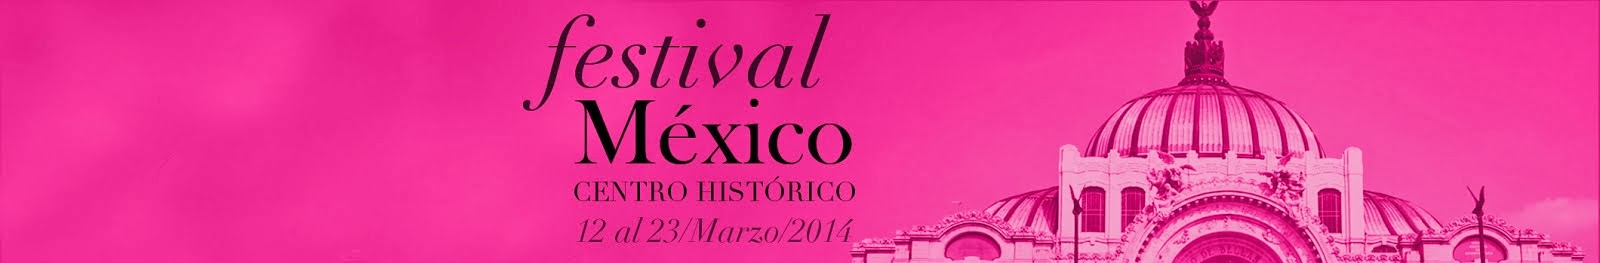 Festival Centro Histórico México